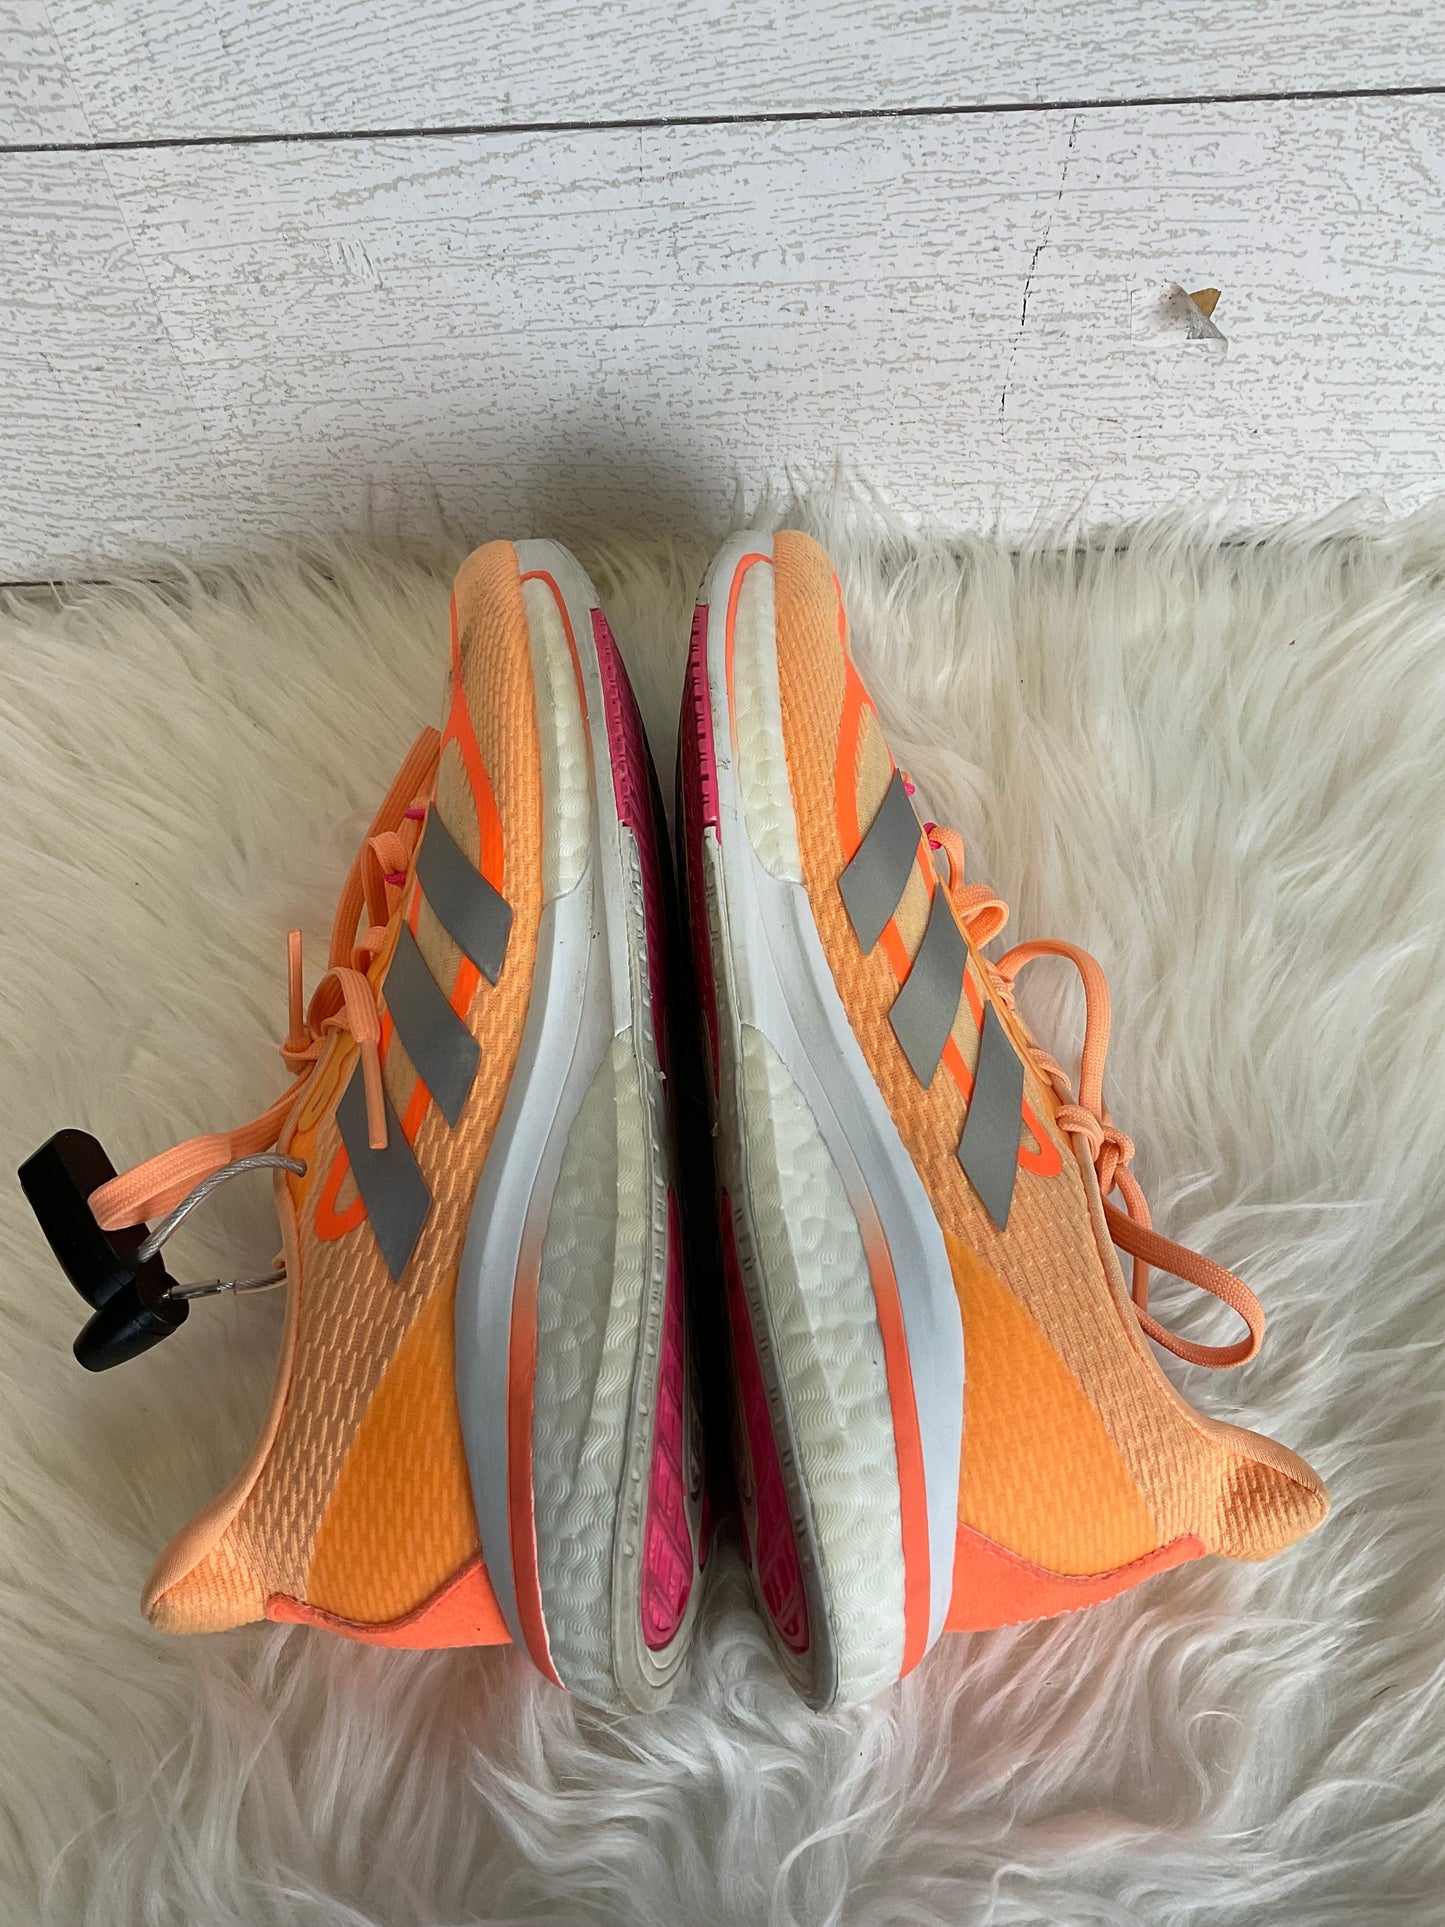 Orange Shoes Athletic Adidas, Size 6